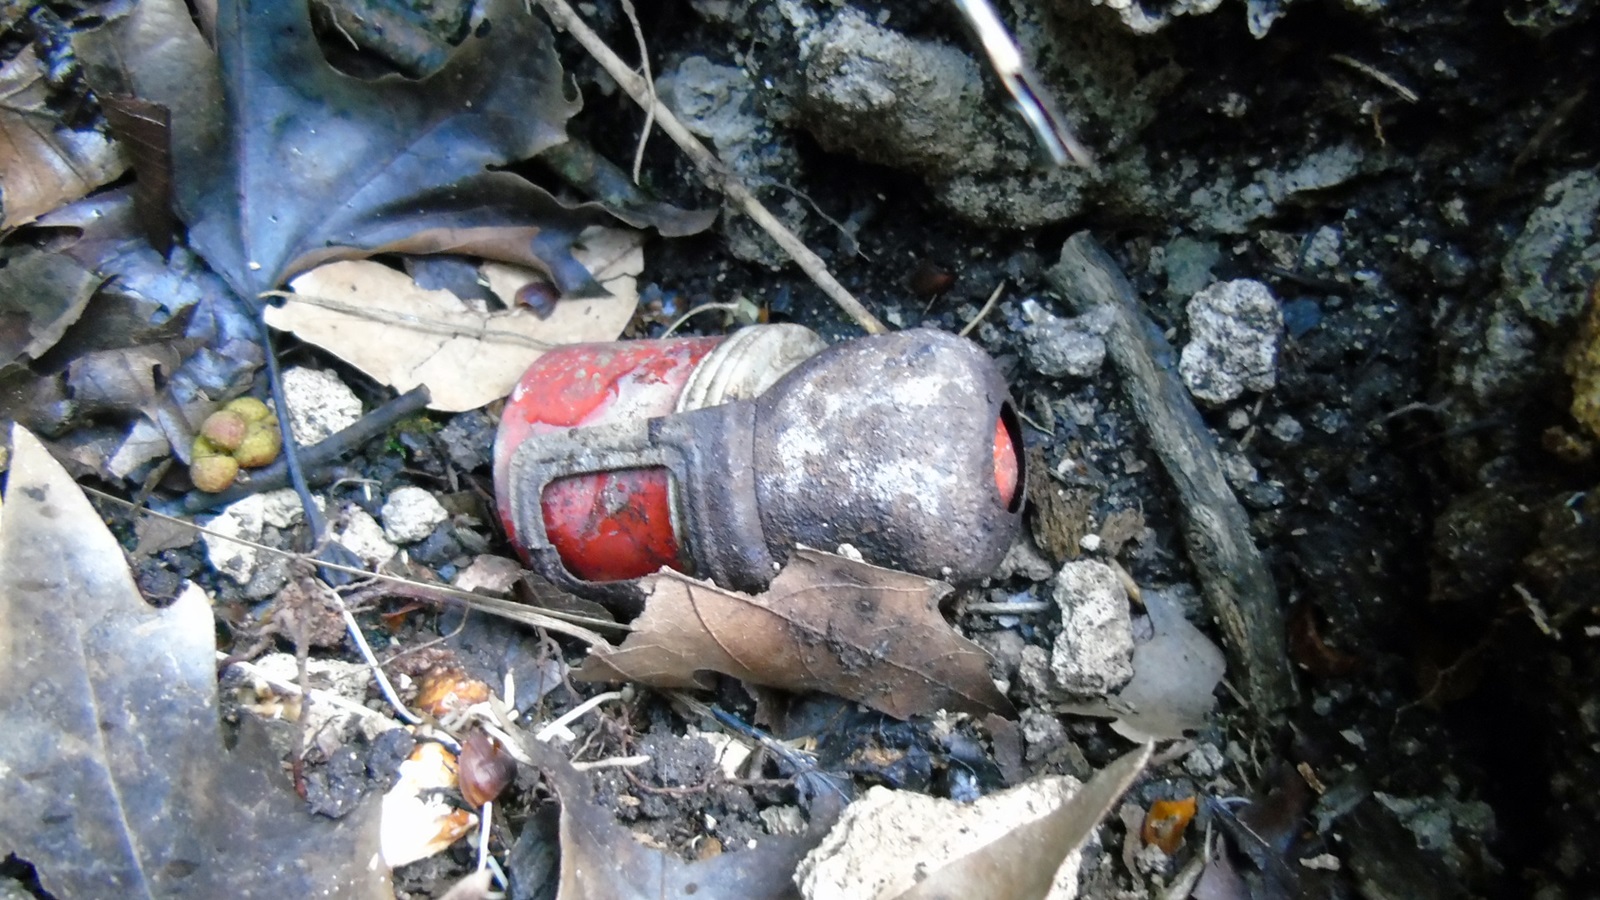 Αποκάλυψη in: Βρέθηκαν 4 χειροβομβίδες κοντά σε κατοικημένη περιοχή στο Μαρούσι